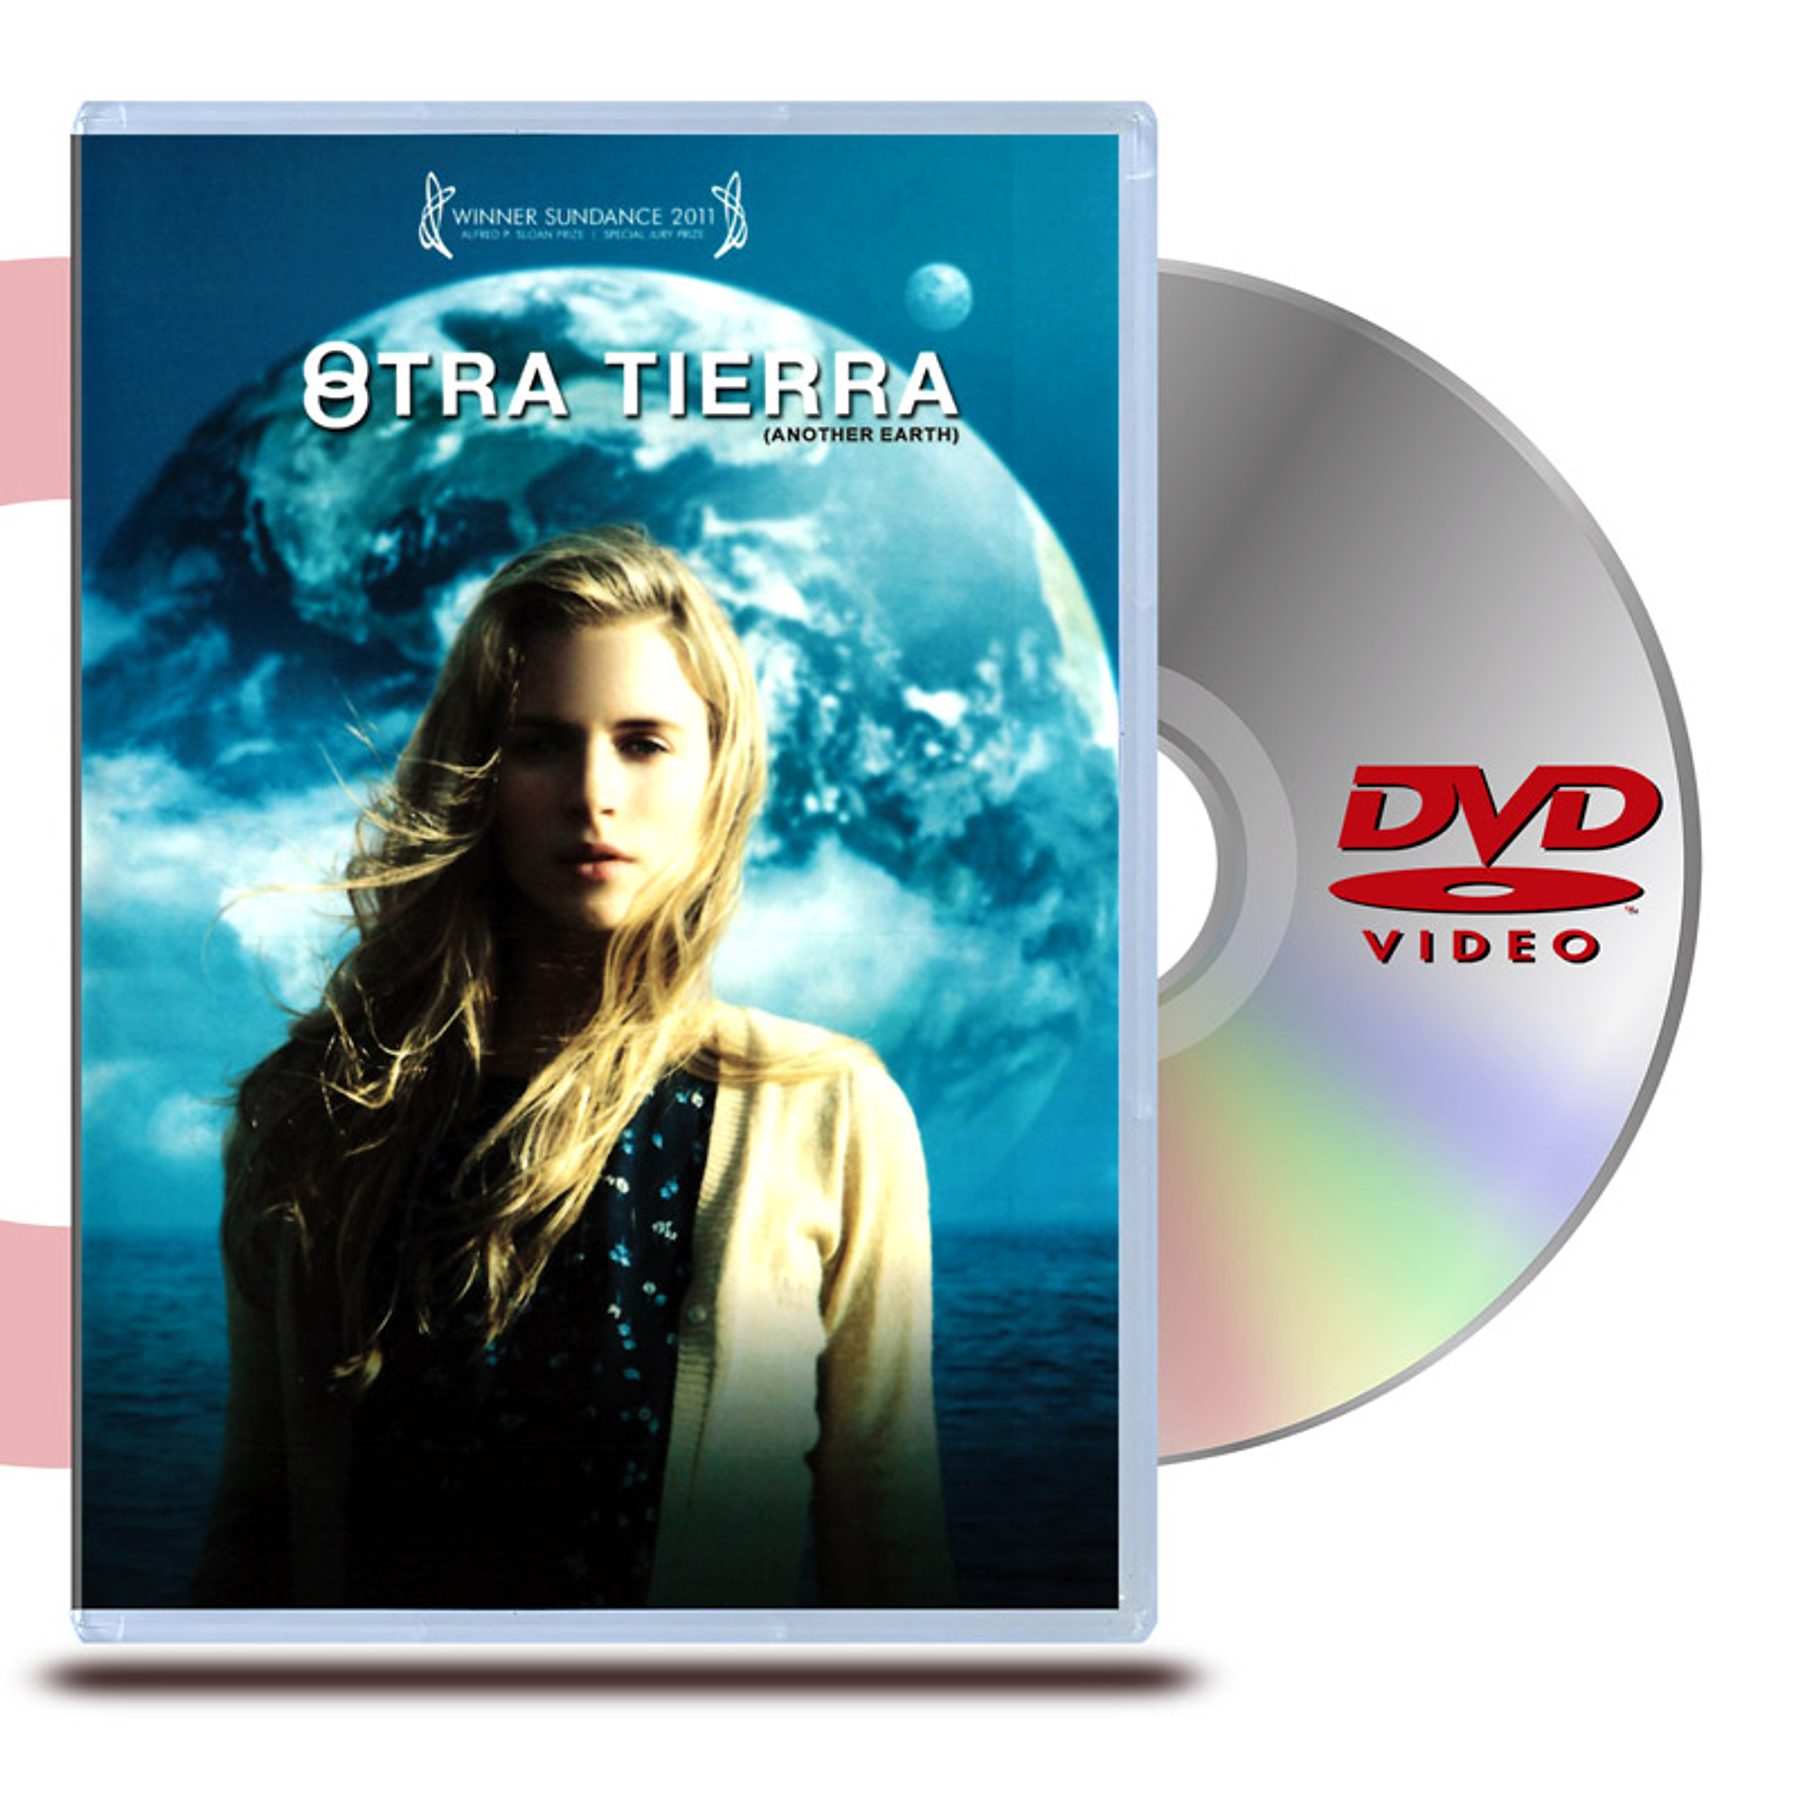 DVD OTRA TIERRA